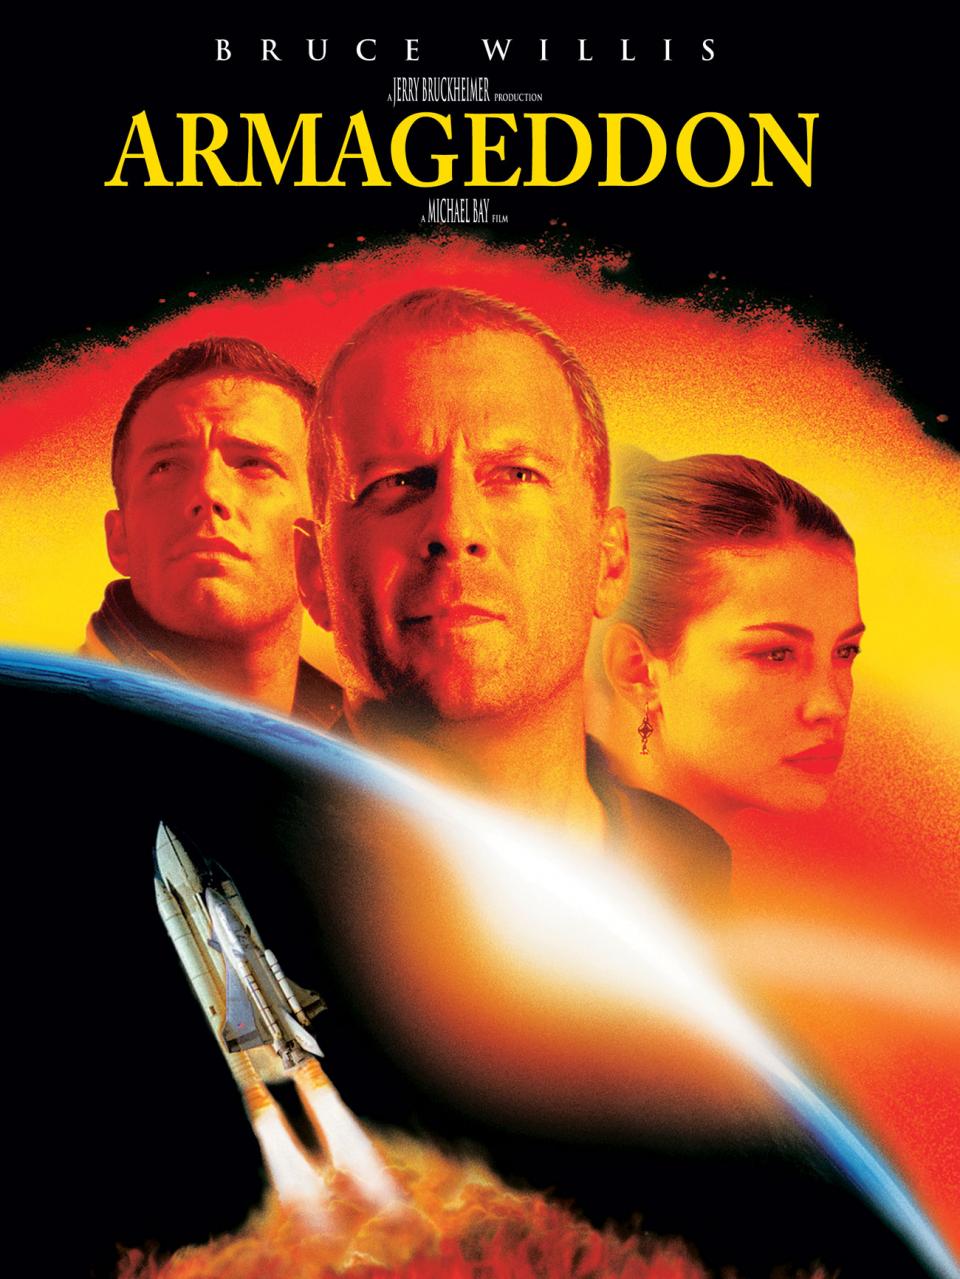 Armageddon Movie Quotes. QuotesGram